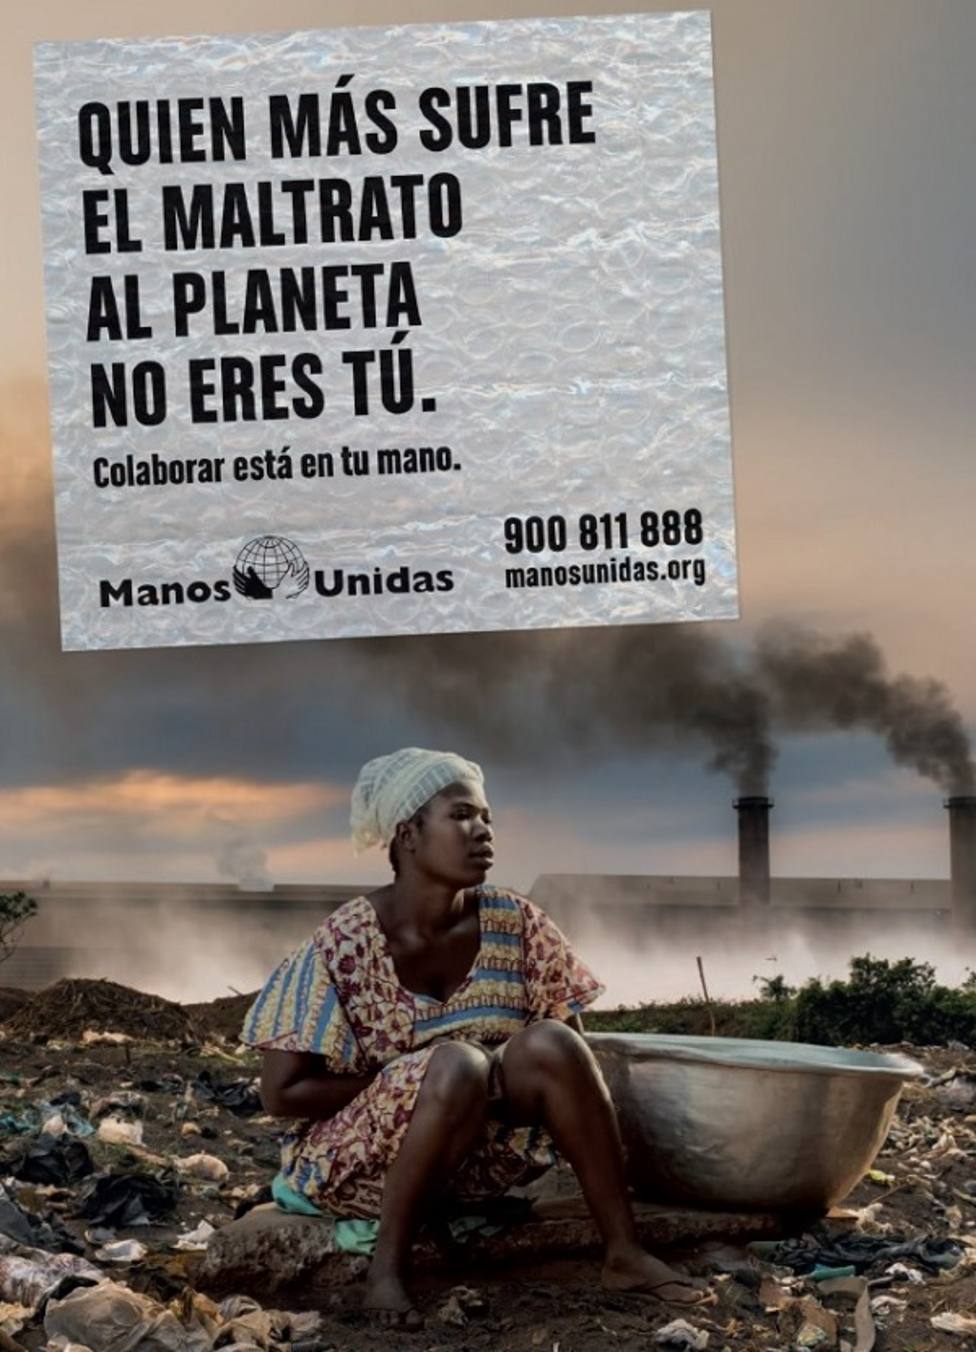 “Quién más sufre el maltrato del planeta no eres tú”, Campaña de Manos Unidas 2020